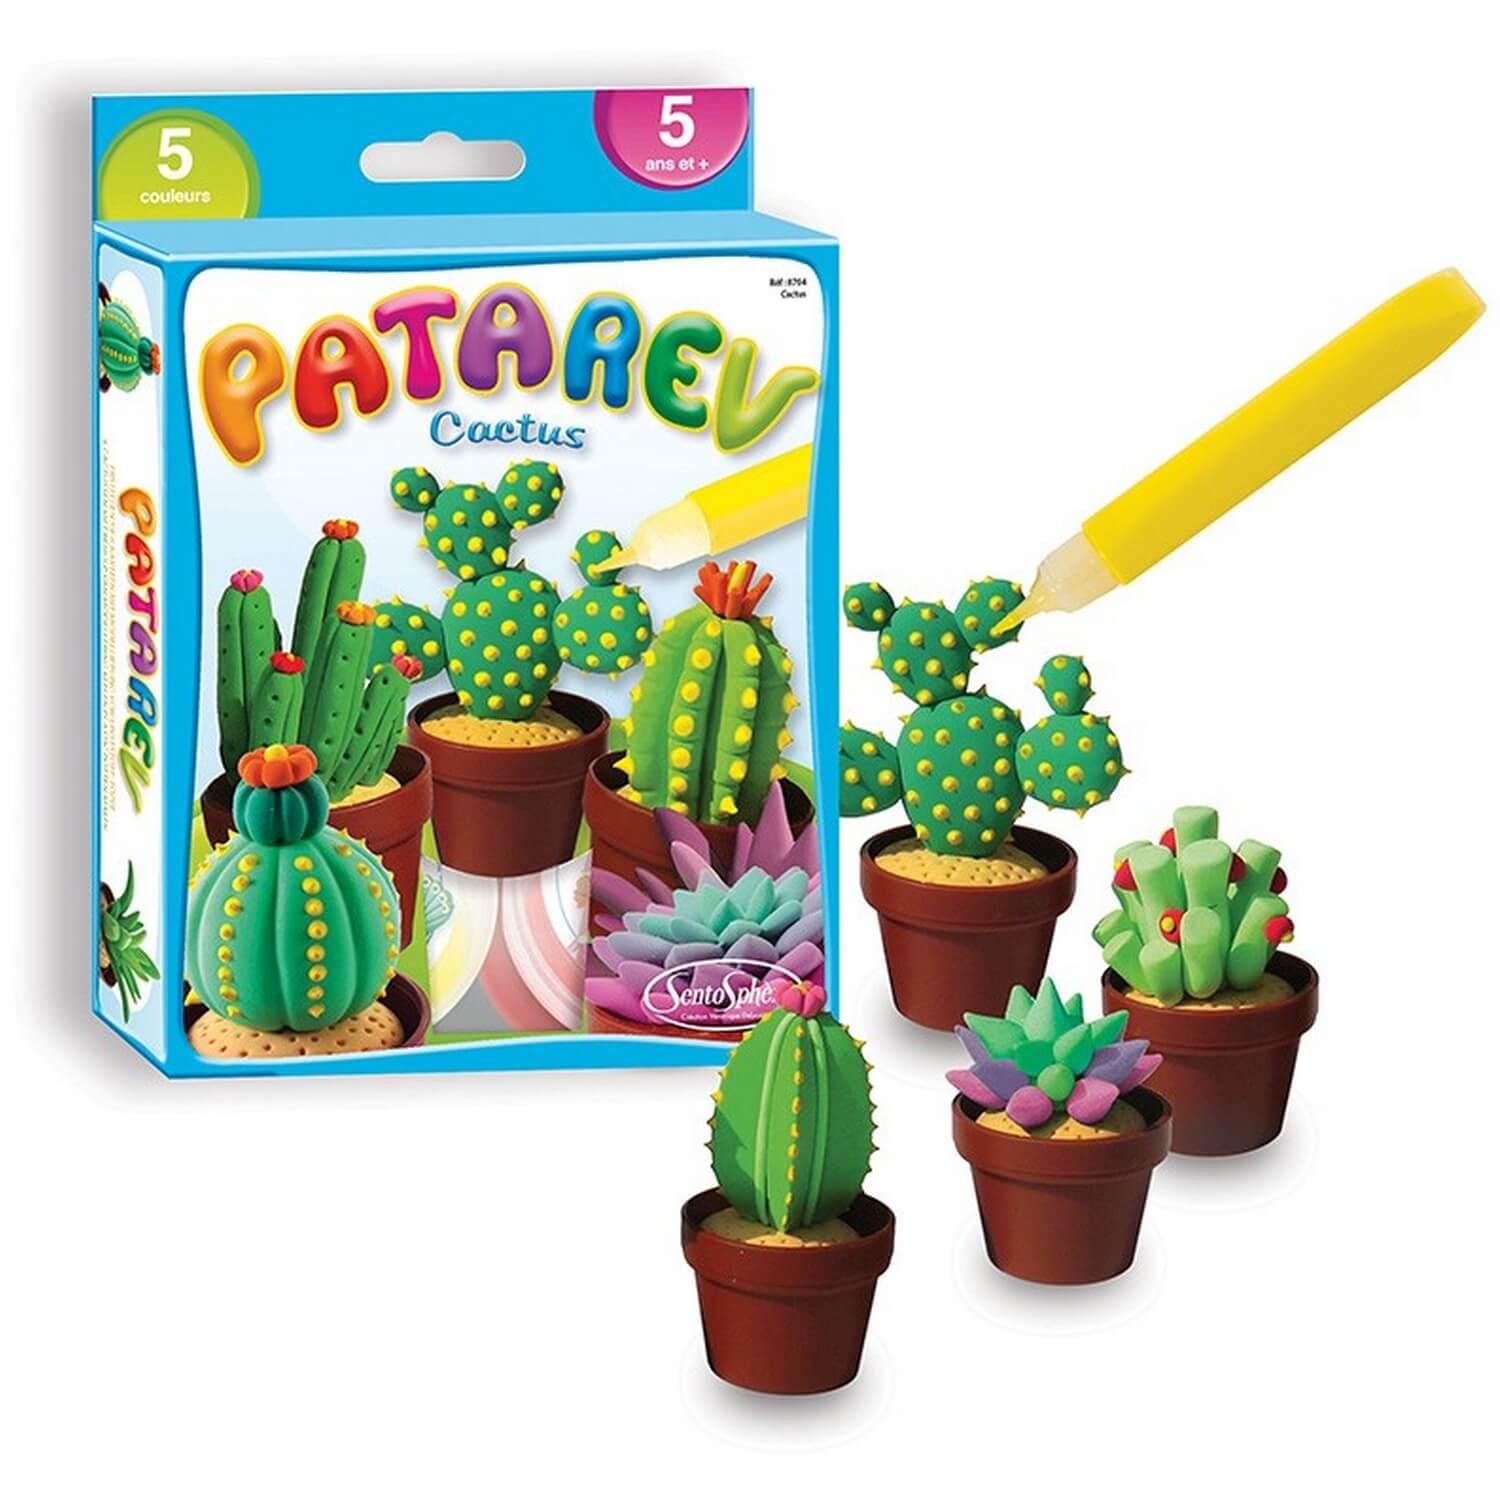 Pâte à modeler Patarev : Blister Cactus - Jeux et jouets